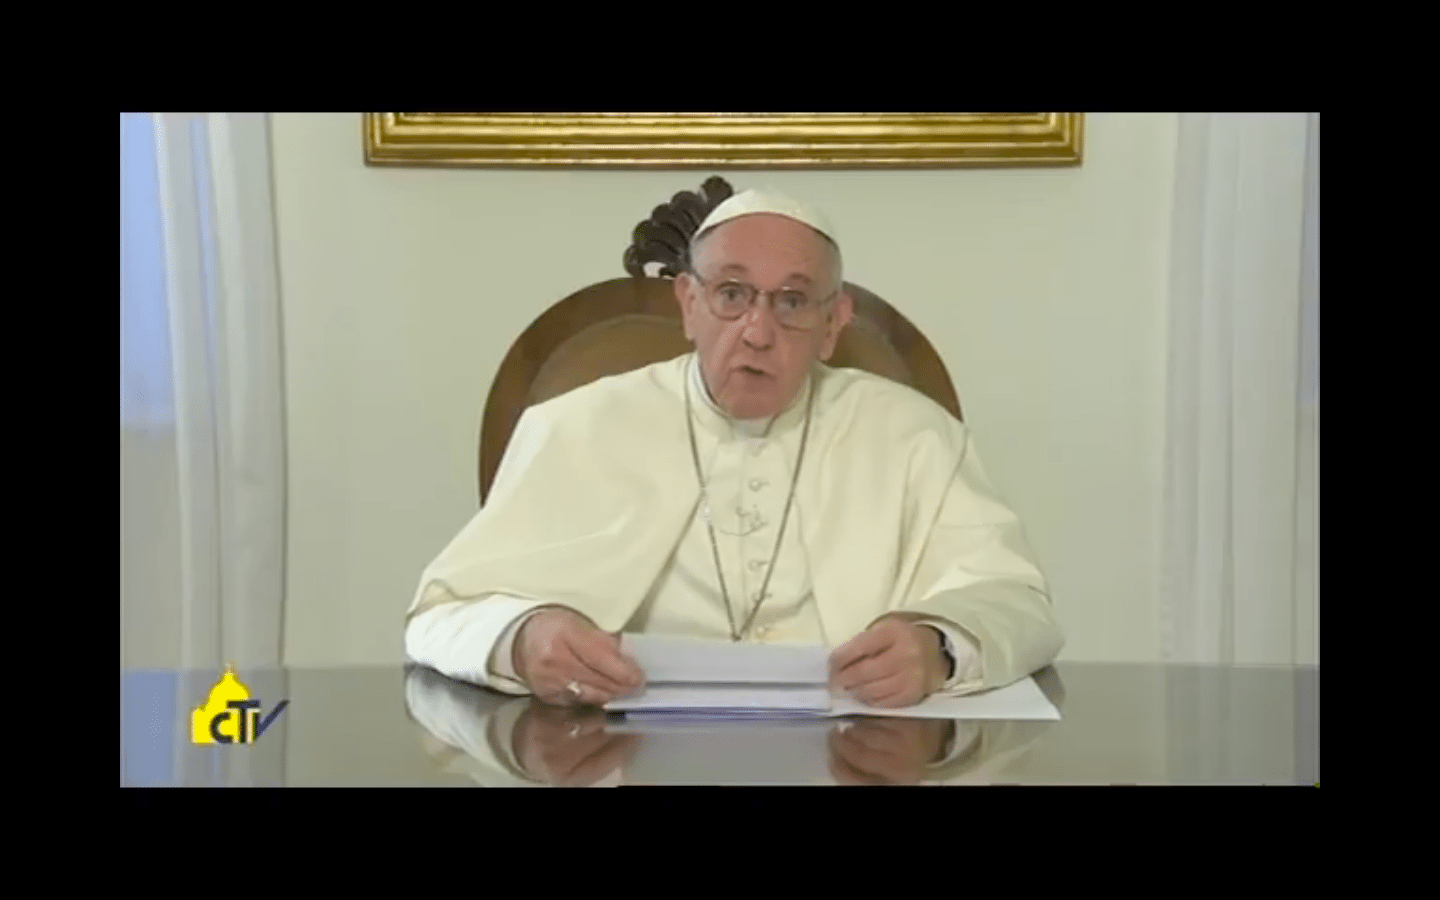 Recalca el Papa Francisco, "El político debe ser mártir del servicio"